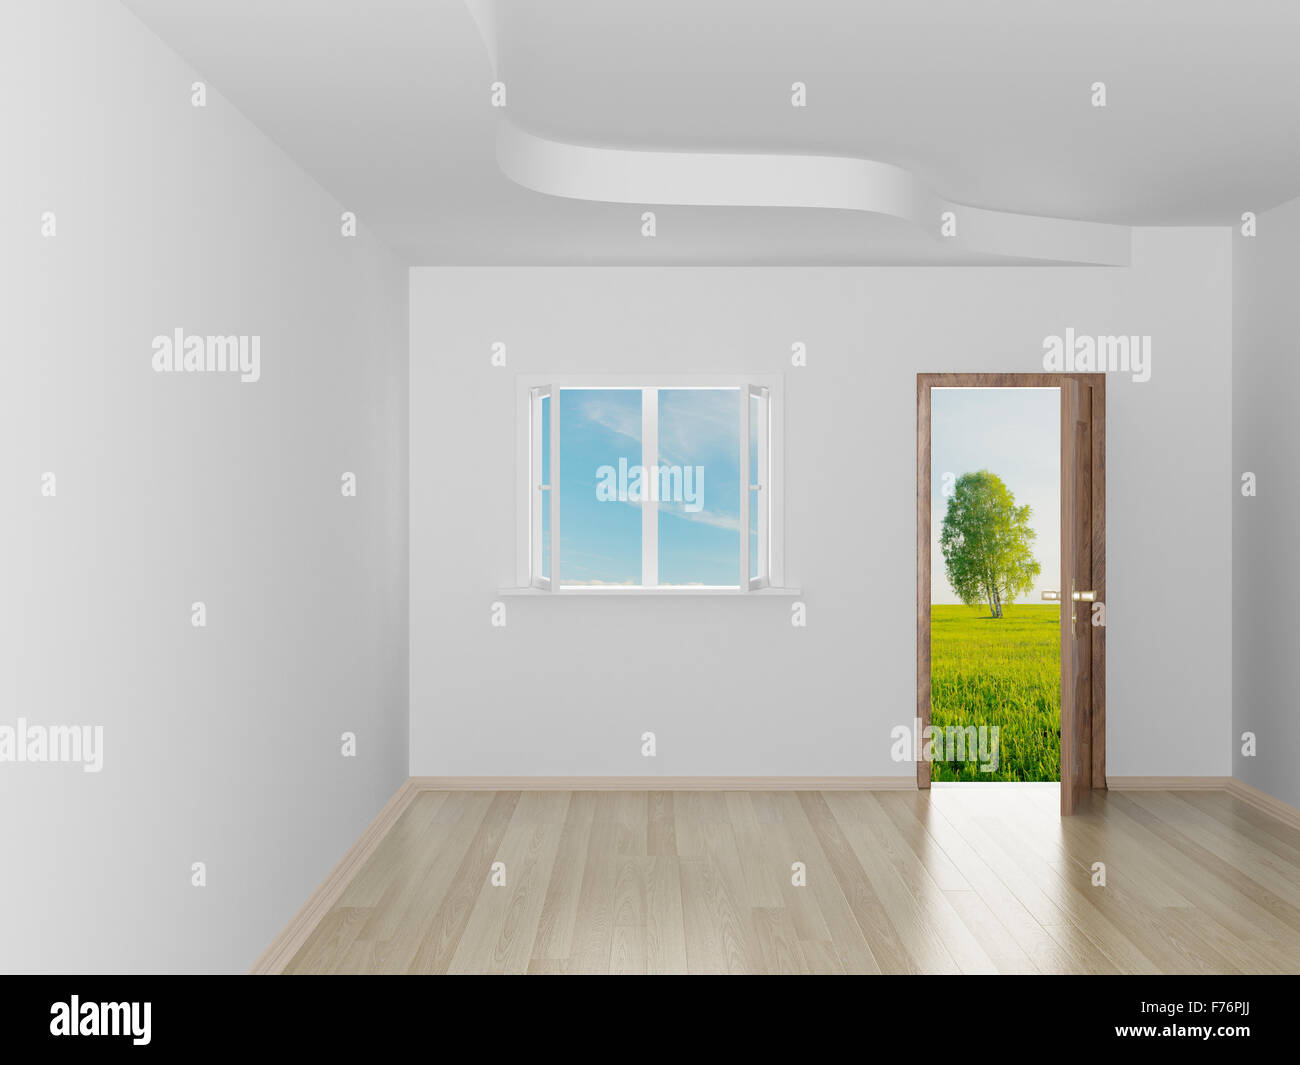 Empty room. Landscape behind the open door. 3D image Stock Photo